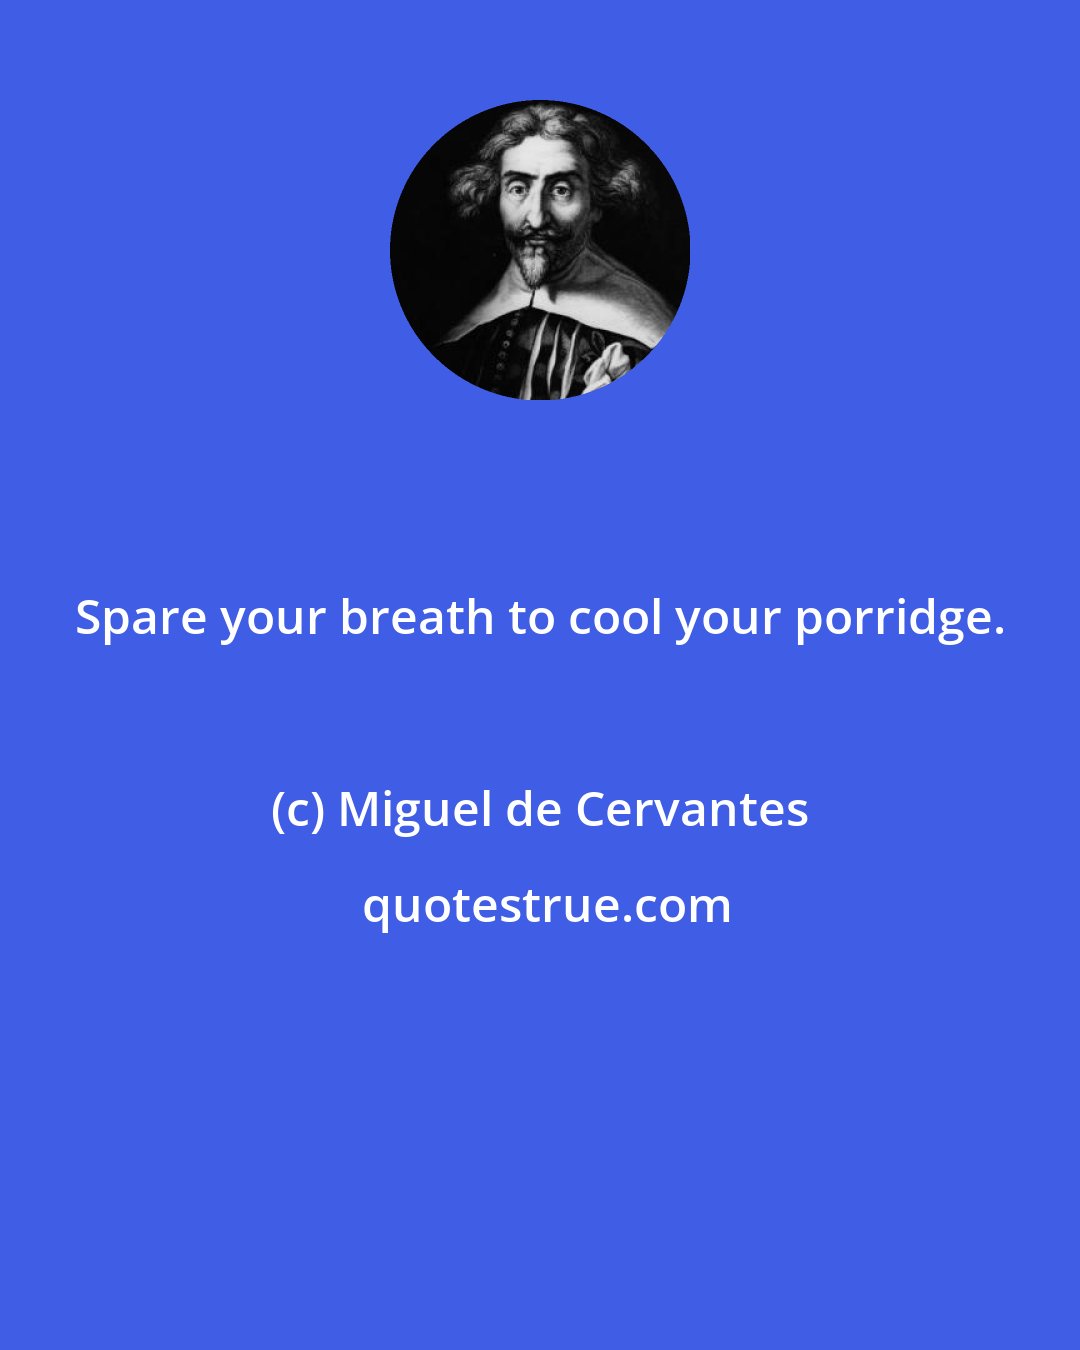 Miguel de Cervantes: Spare your breath to cool your porridge.